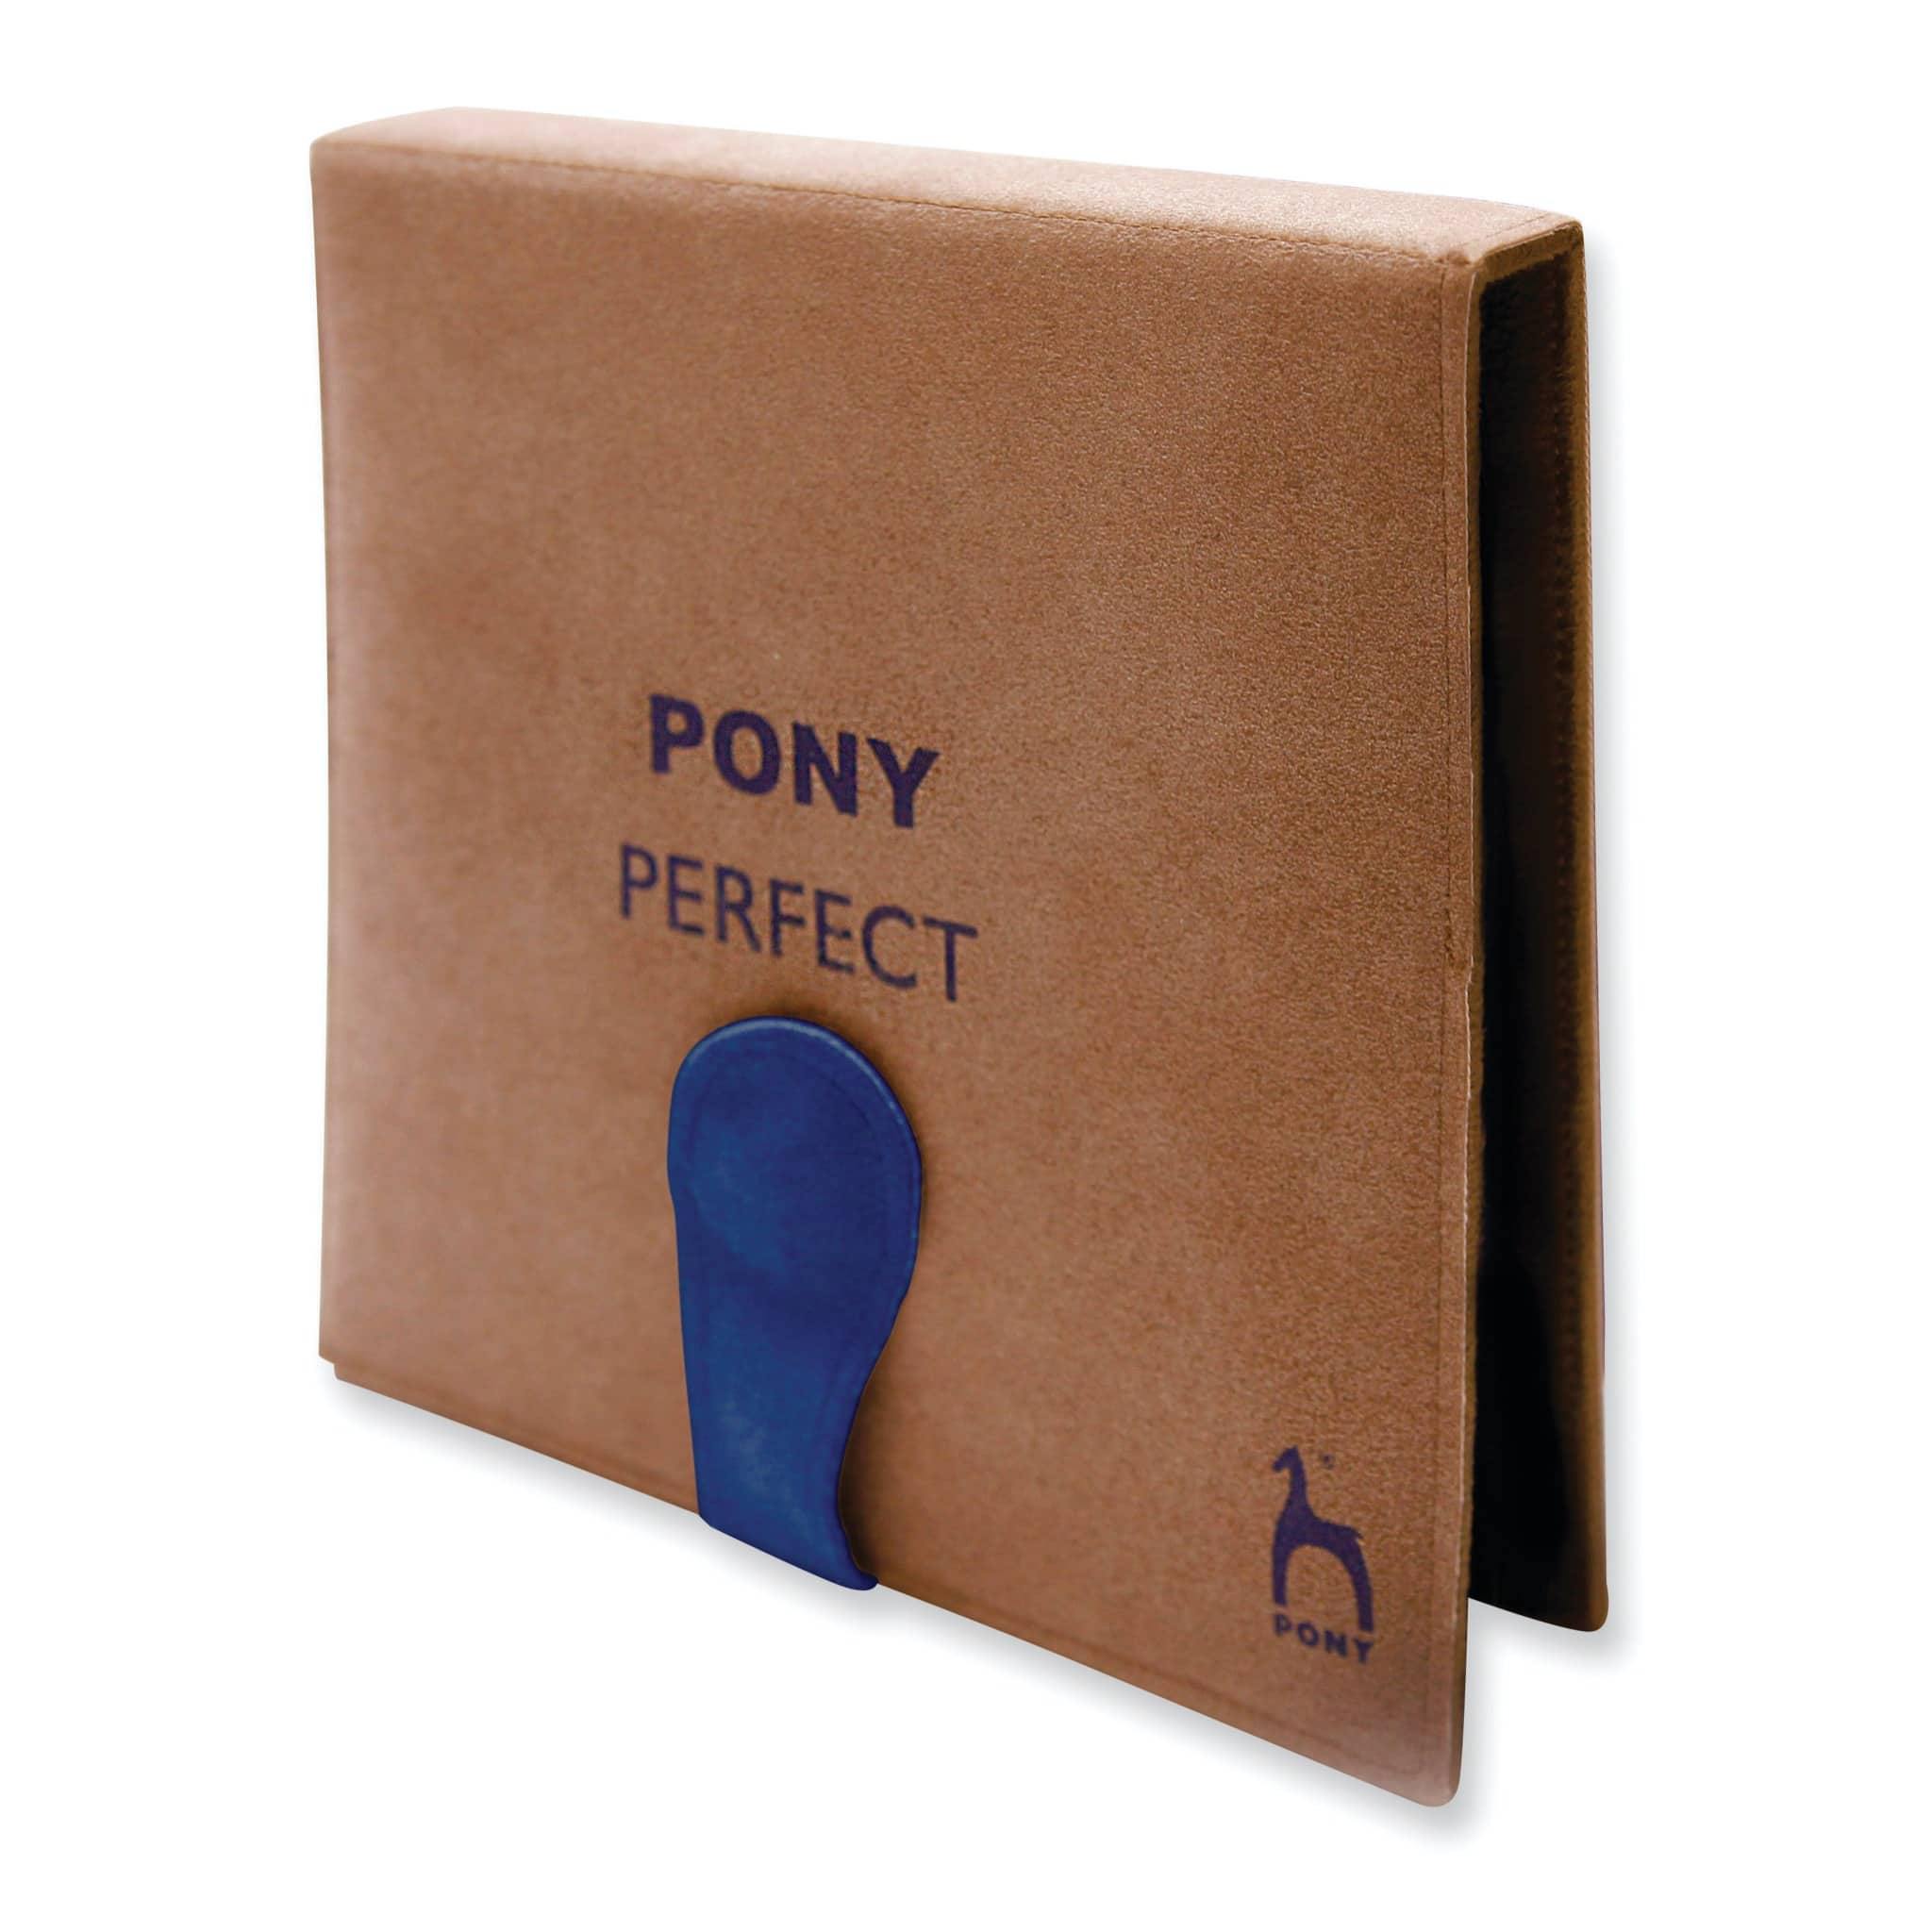 Pony Perfect Circular Interchangeable Luxury Gift Set - Woolshop.co.uk